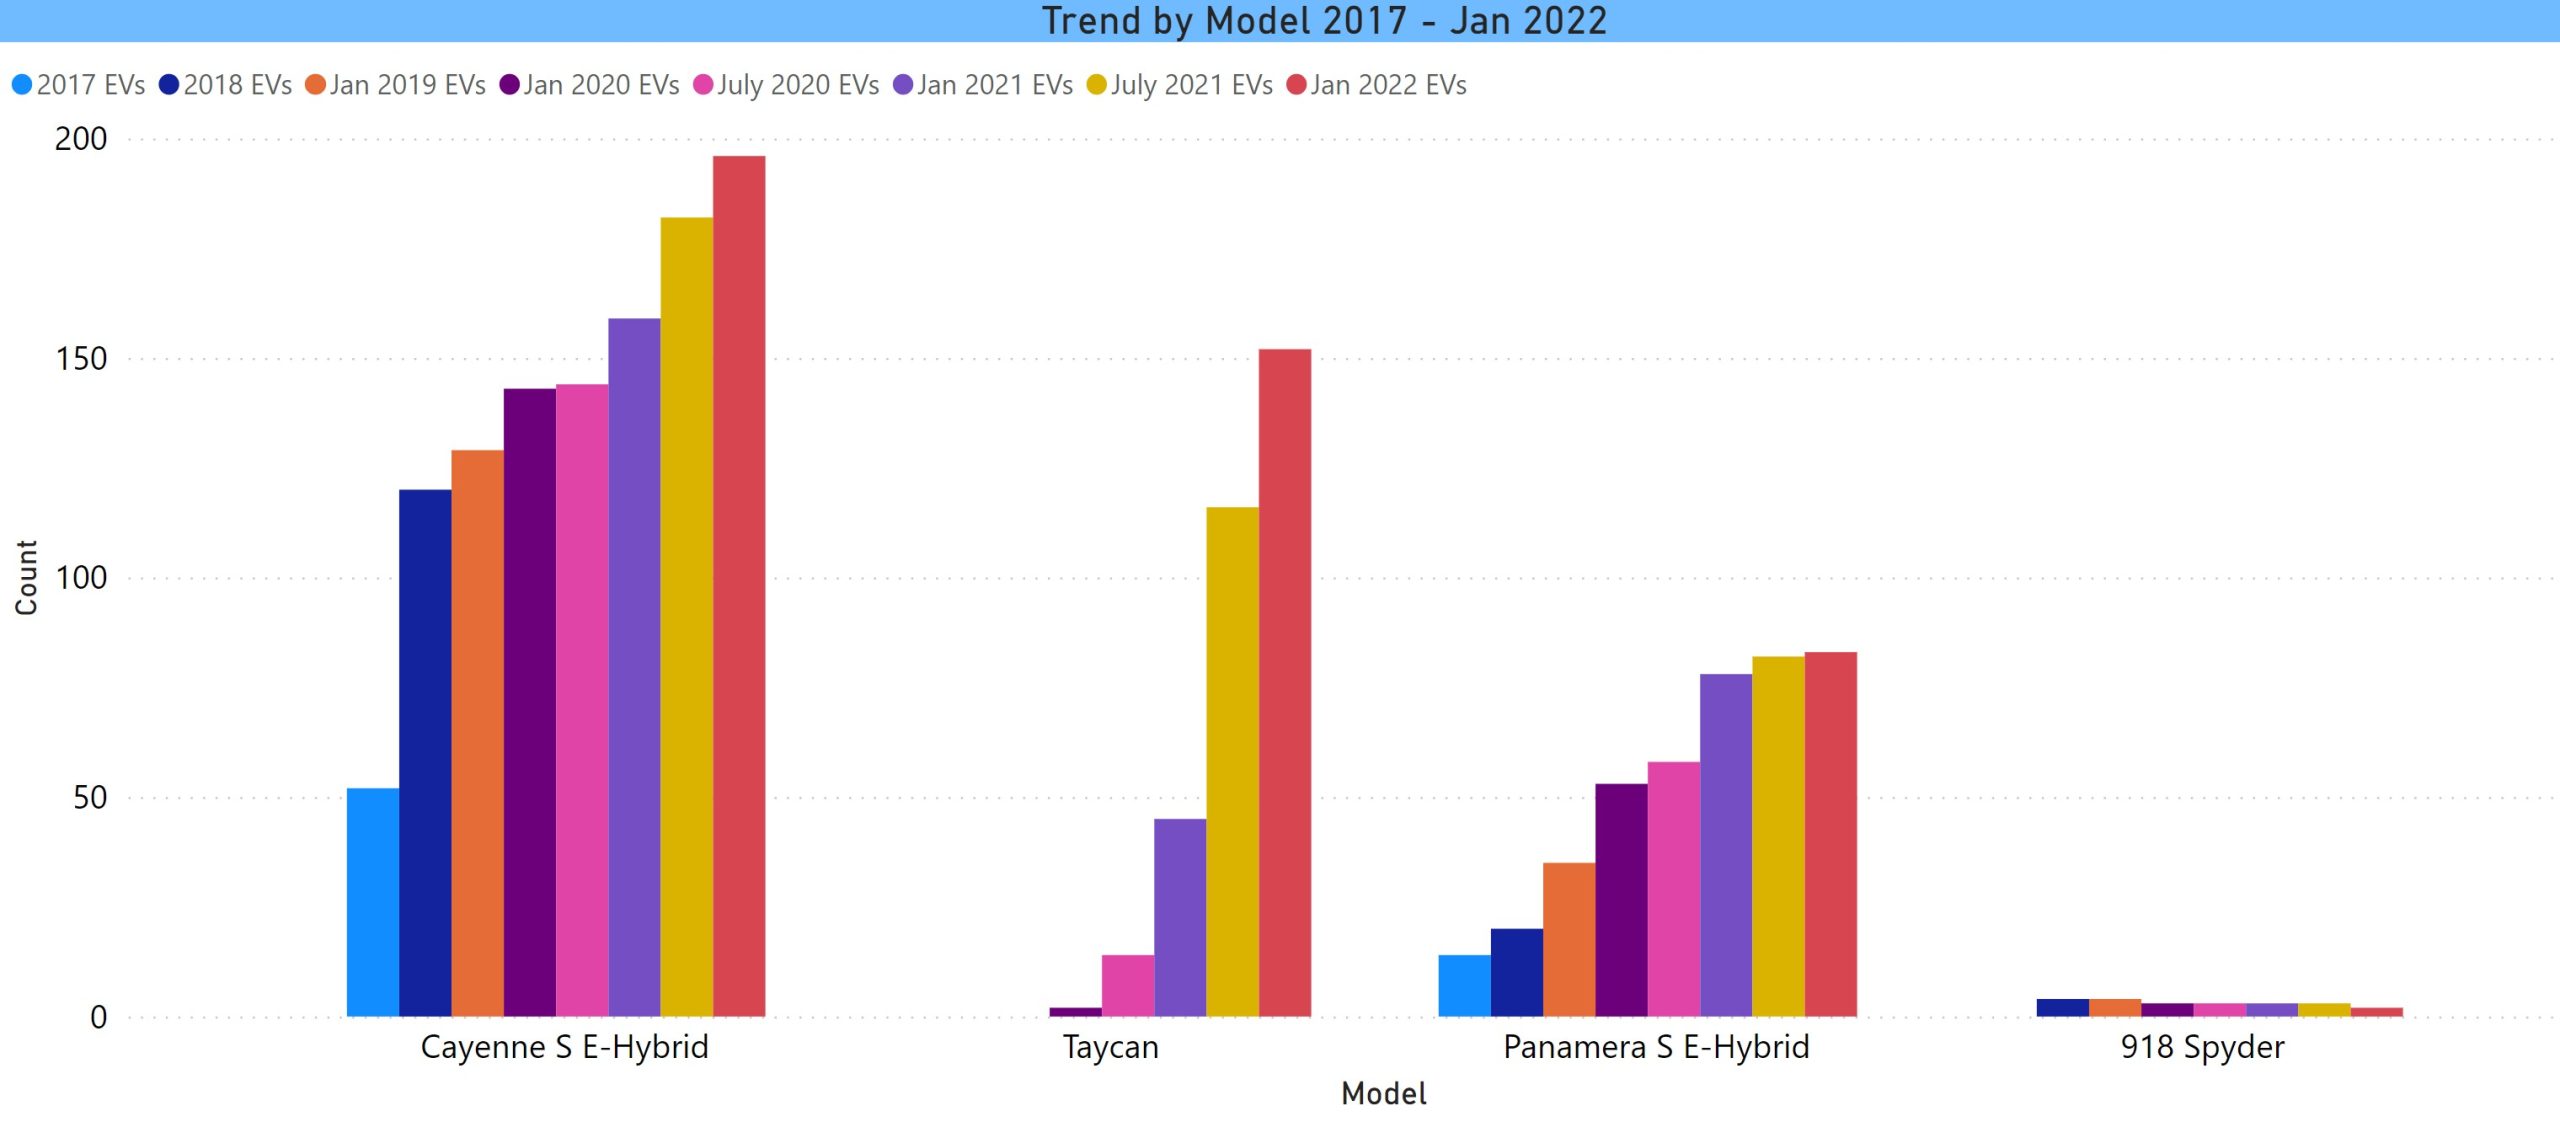 Porsche Models Trend in CT thru Jan 2022